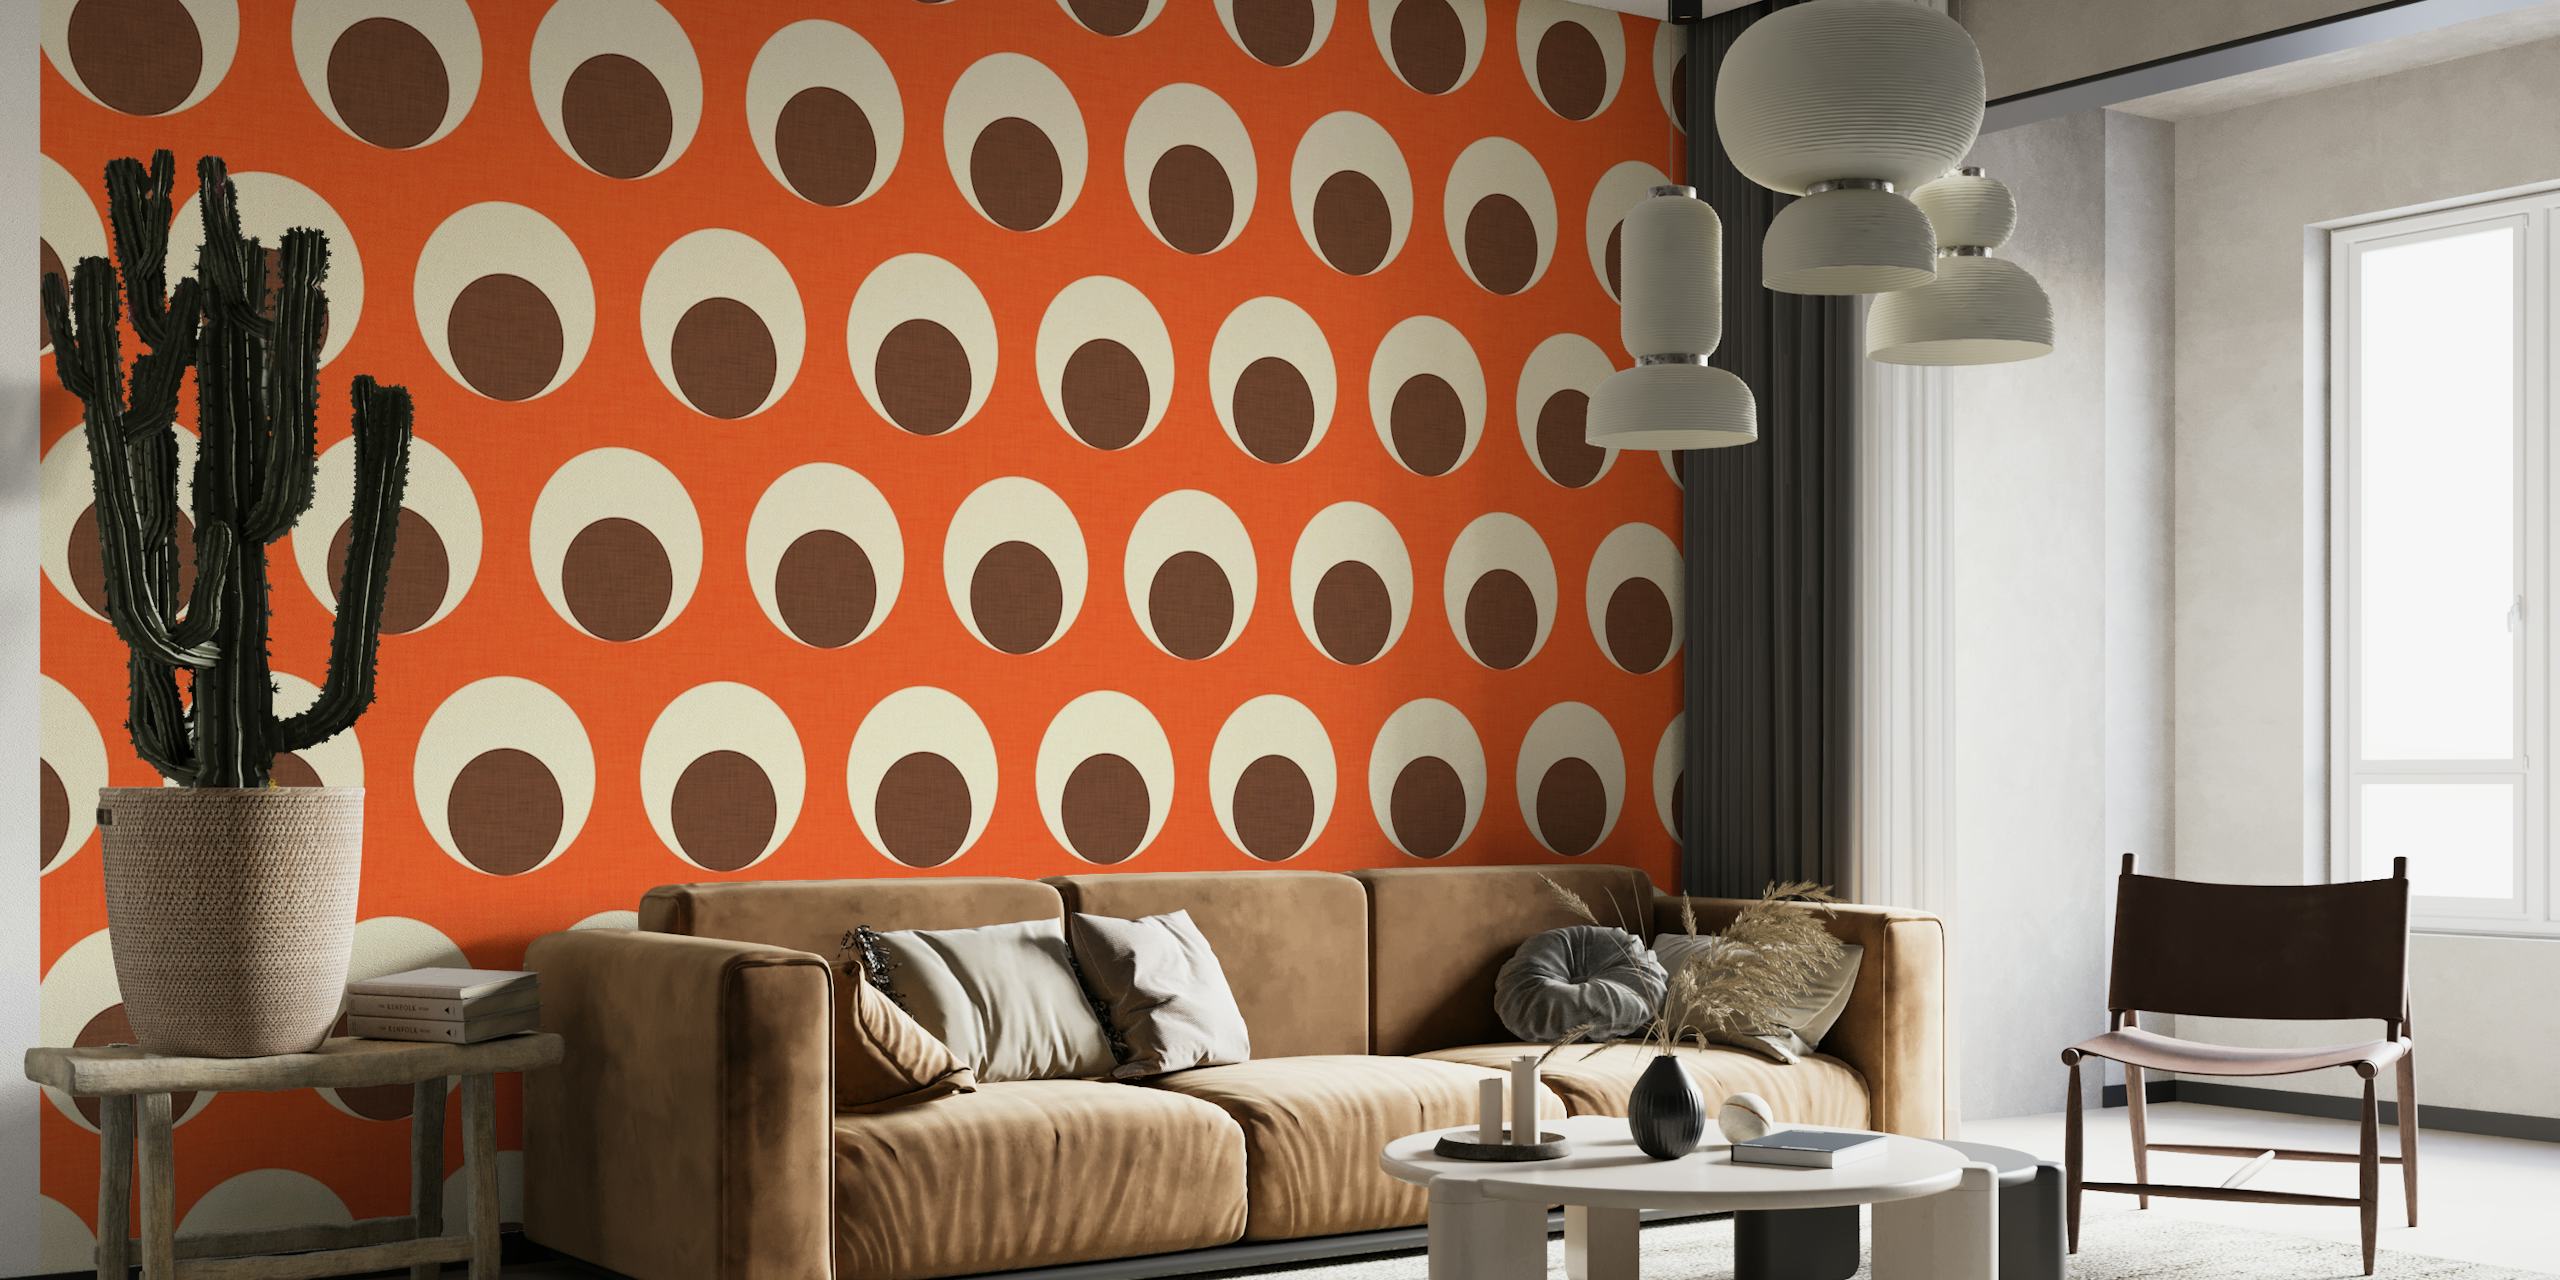 Orangefarbenes und cremefarbenes Punktmuster-Wandbild für die moderne Innenarchitektur